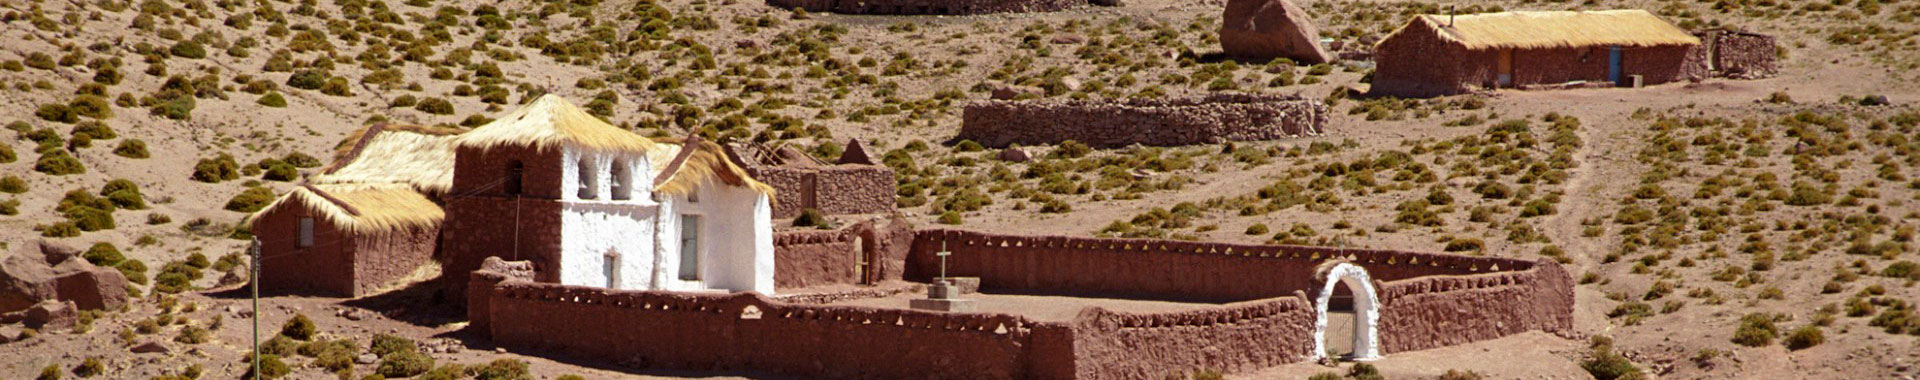 Chile - Alto Atacama - Paseos - Pastores